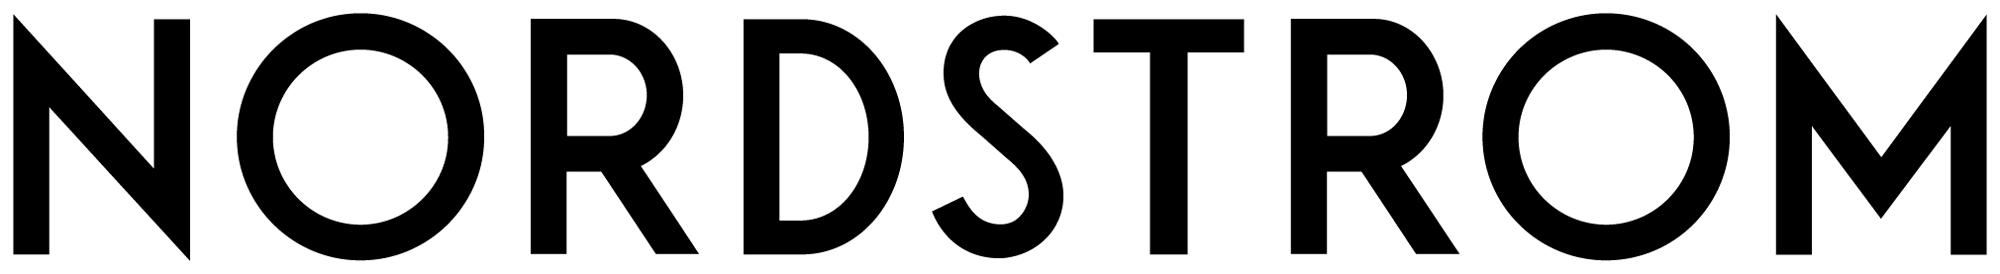 nordstrom_logo.png